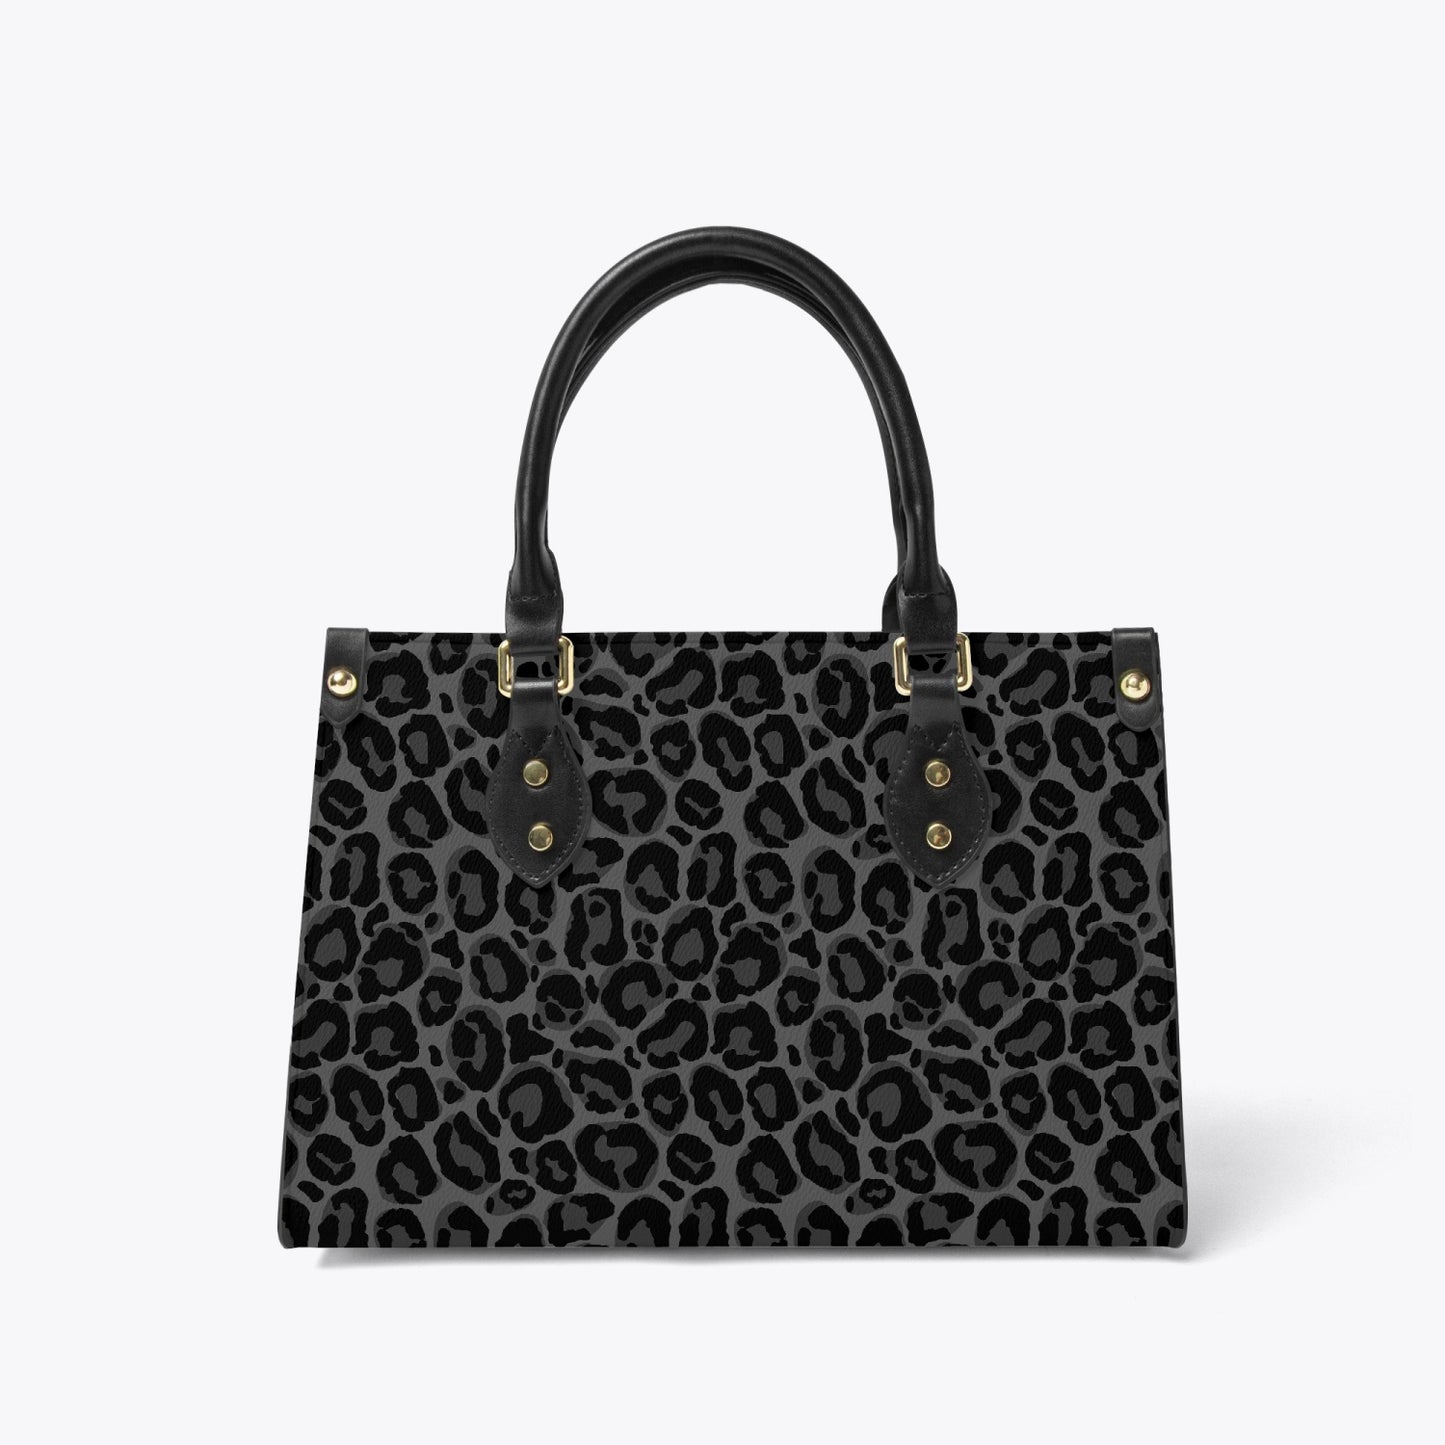 Black Leopard Tote Bag Purse, Cheetah Grey Print Top Handle Handbag Women Vegan Vegan Leather Zip Top Designer Handmade Work Bag